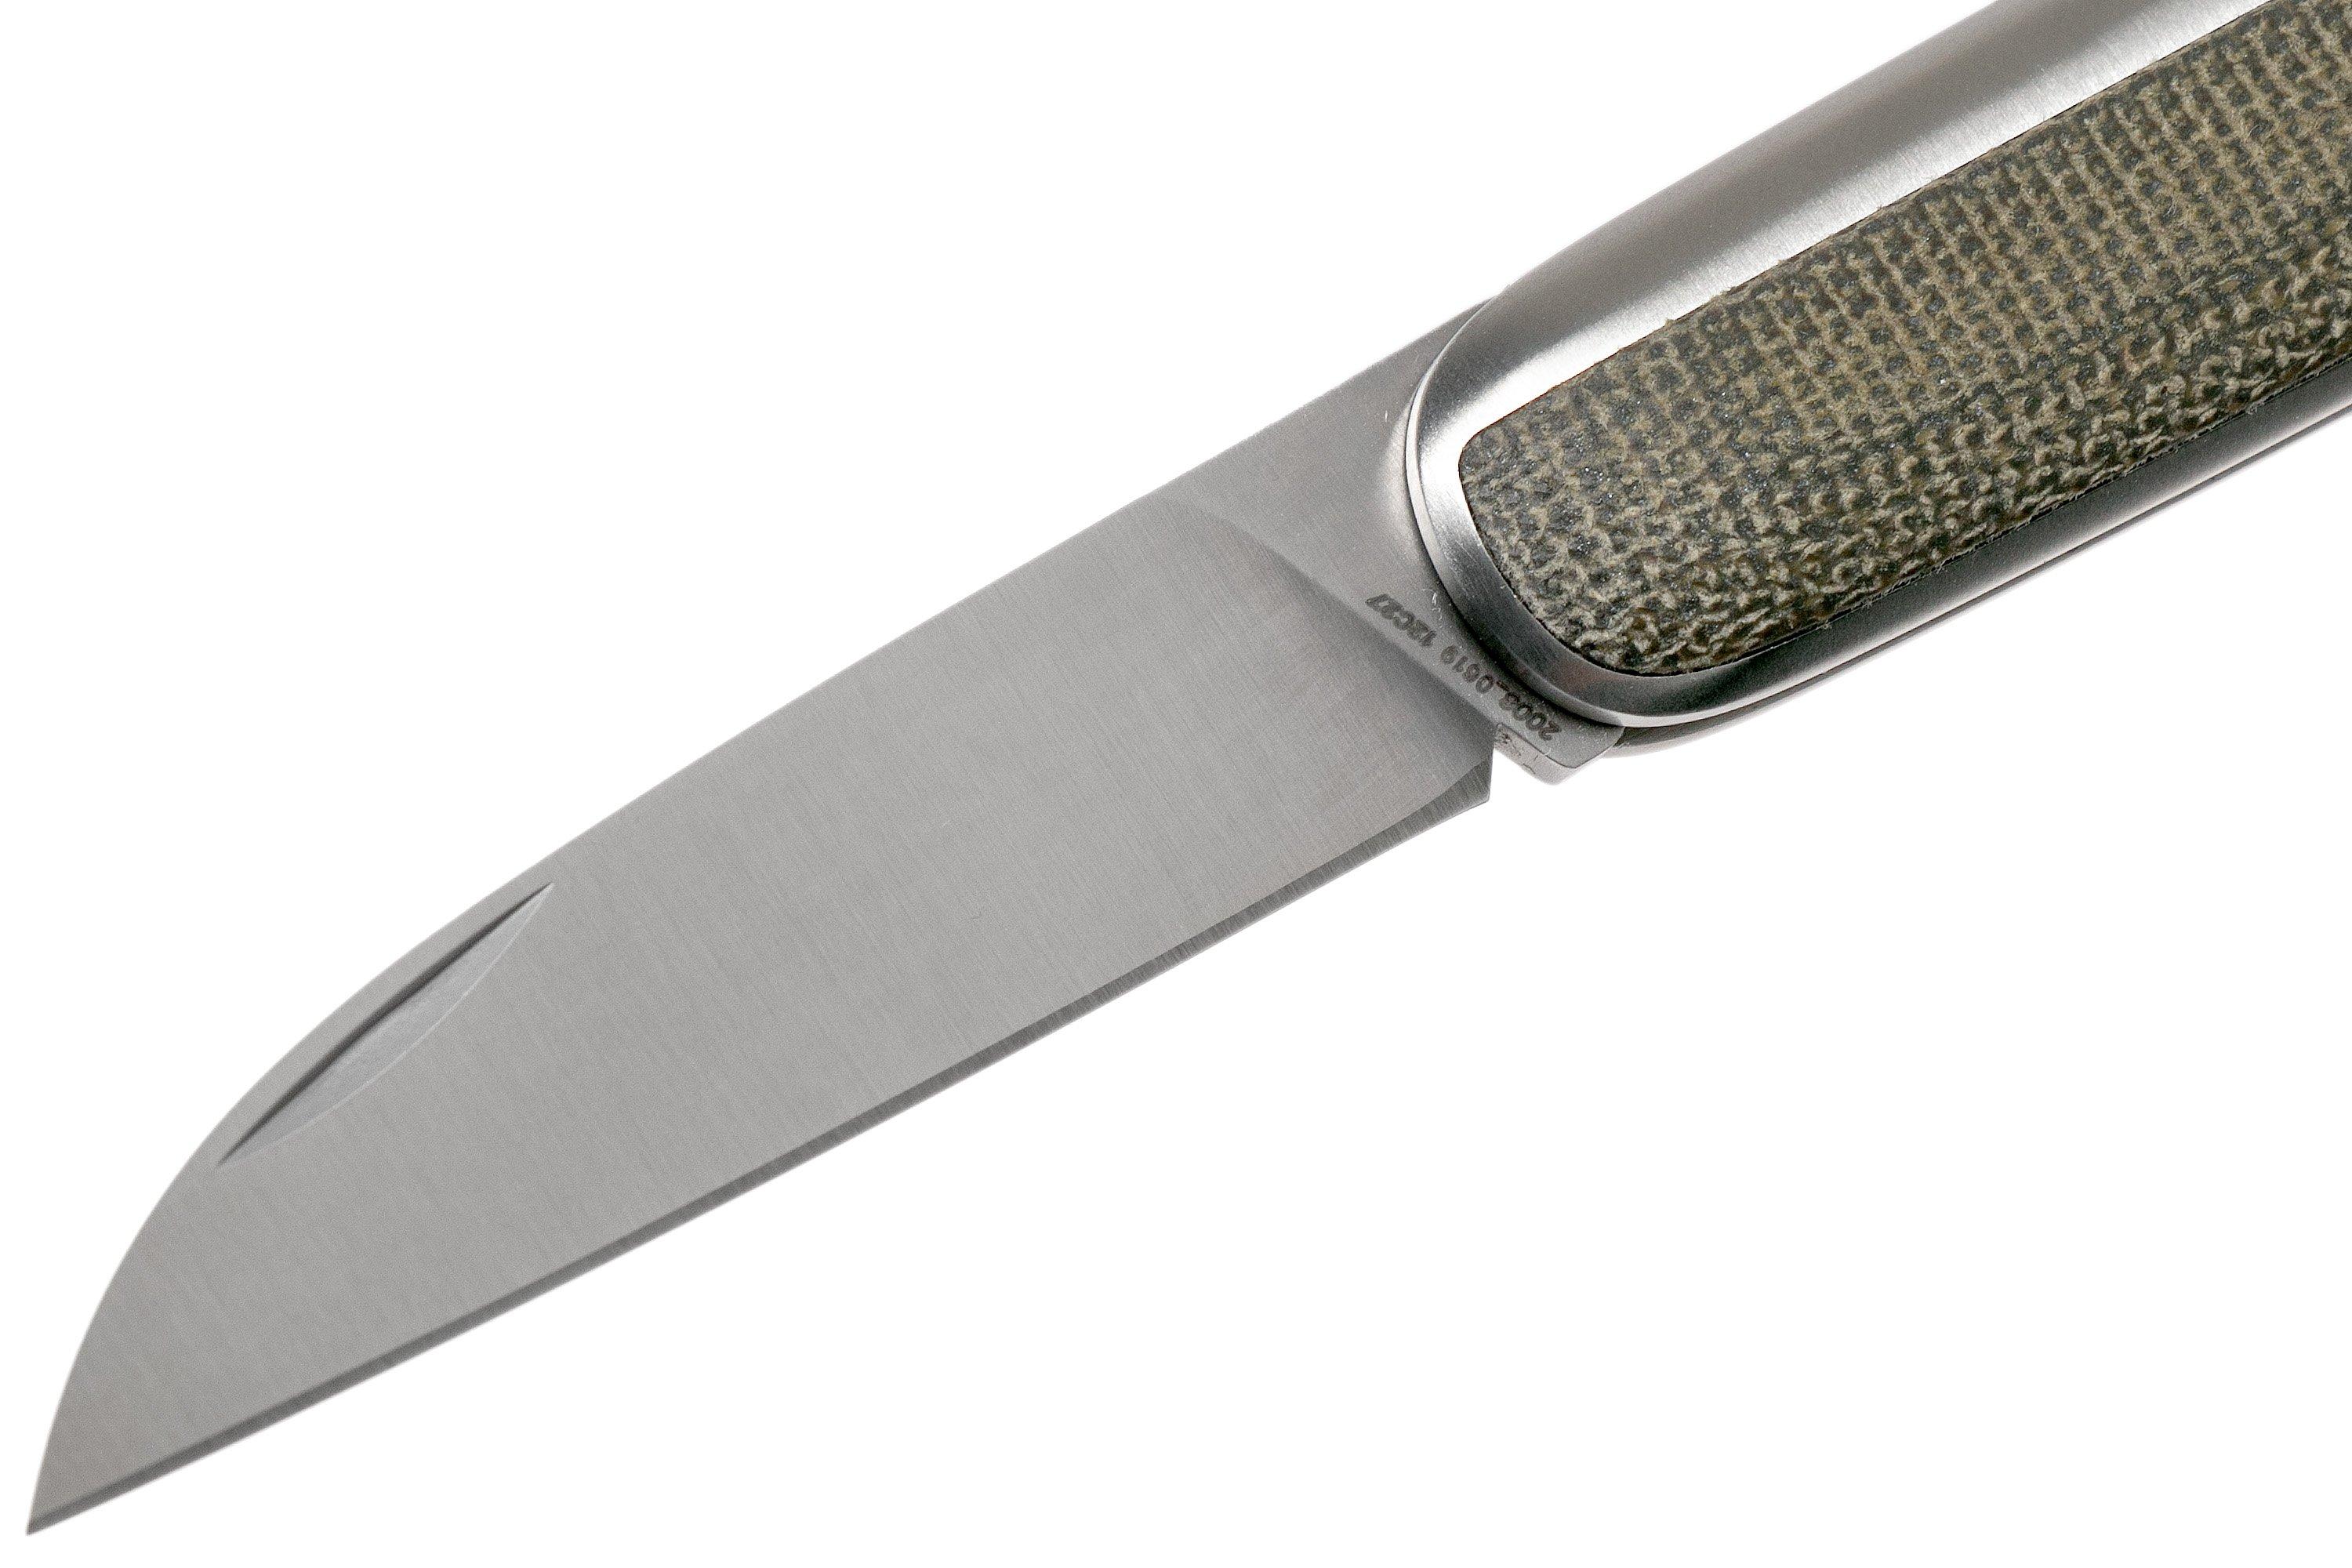 The Pike - Vintage Inspired Pocket Knife